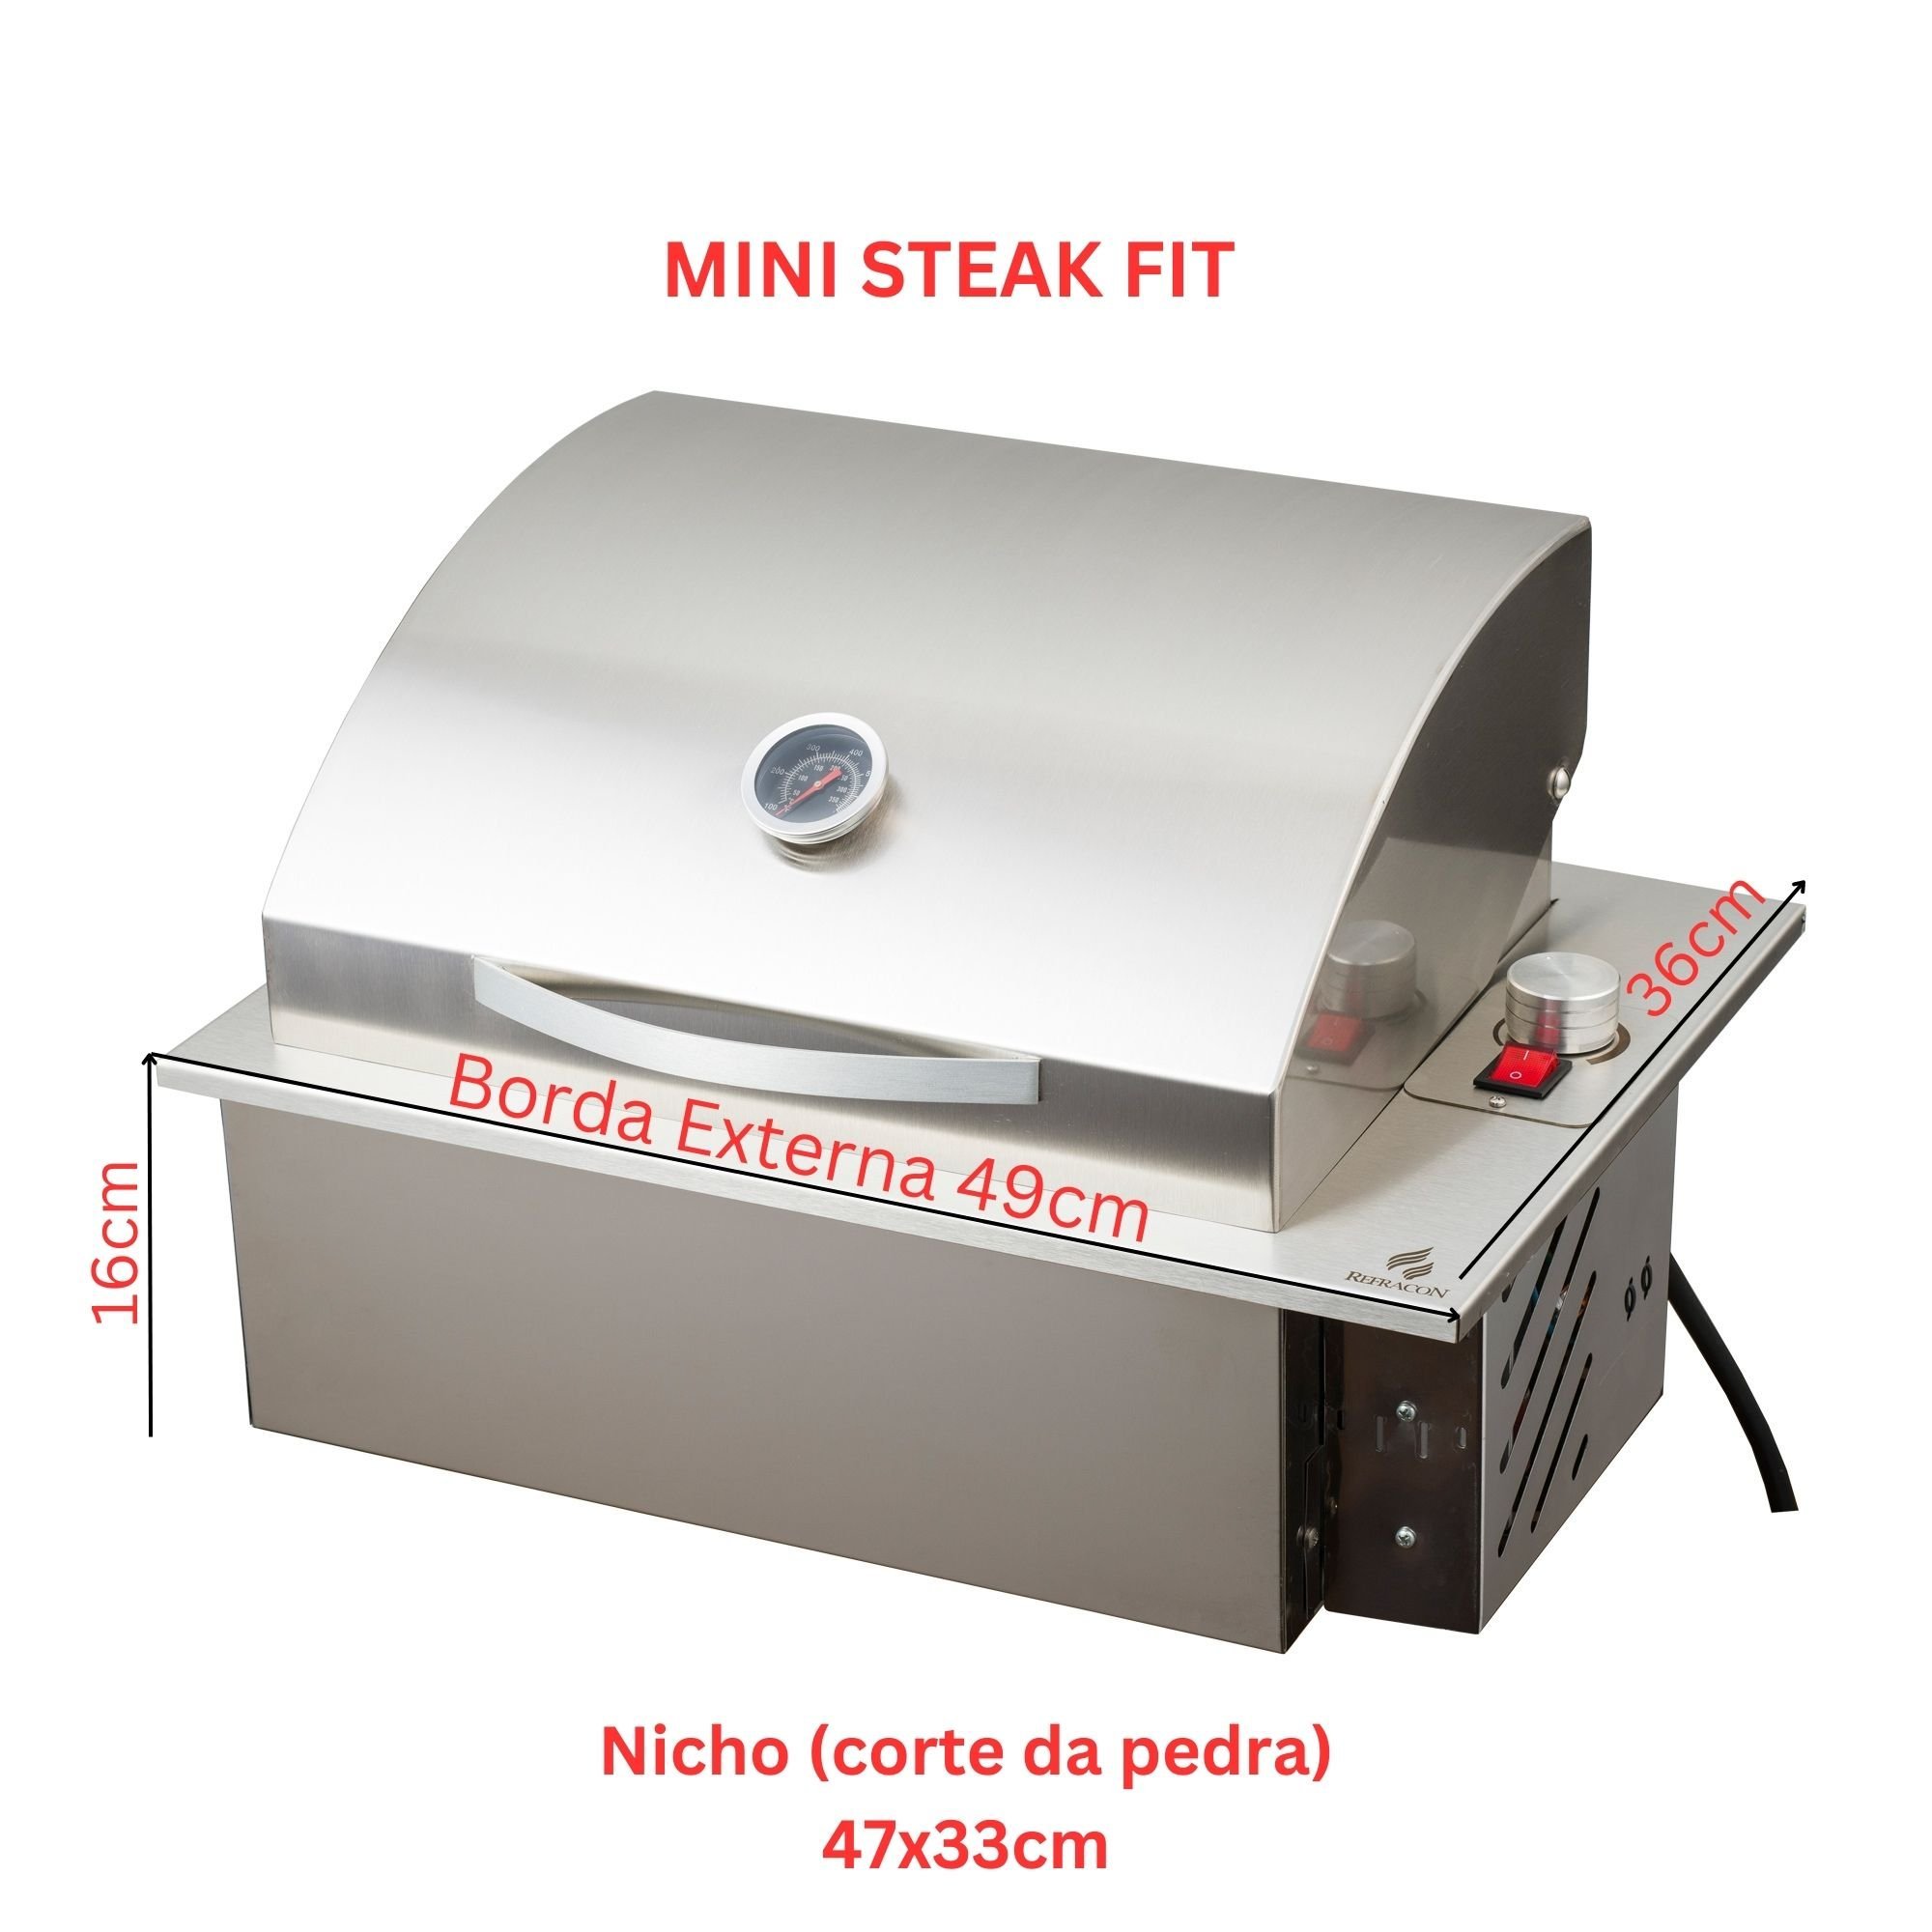 Mini Steak Churrasqueira Elétrica De Embutir Em Inox 304 com Tampa Abafador 49x36cm 110V Refracon - 2